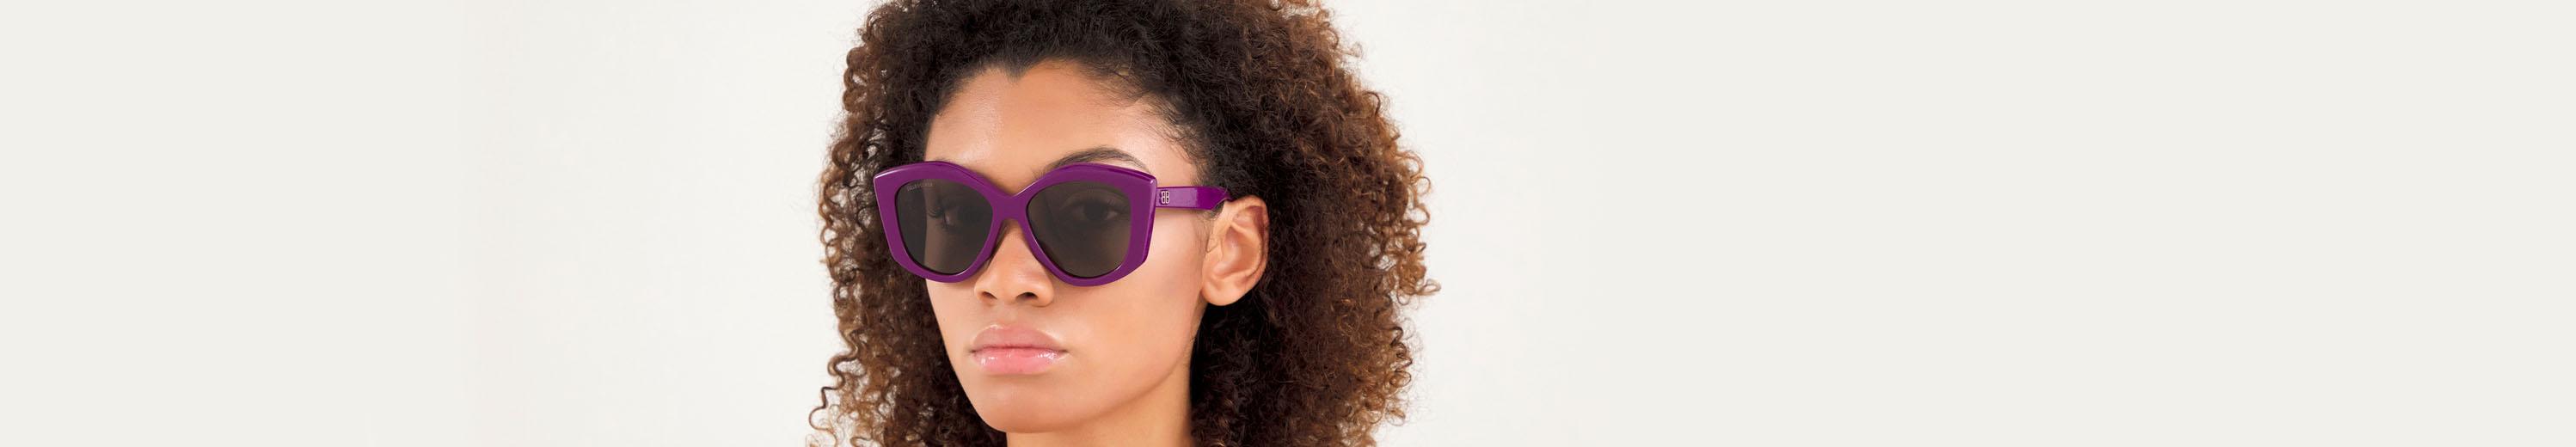 Sunglasses: Violet Color